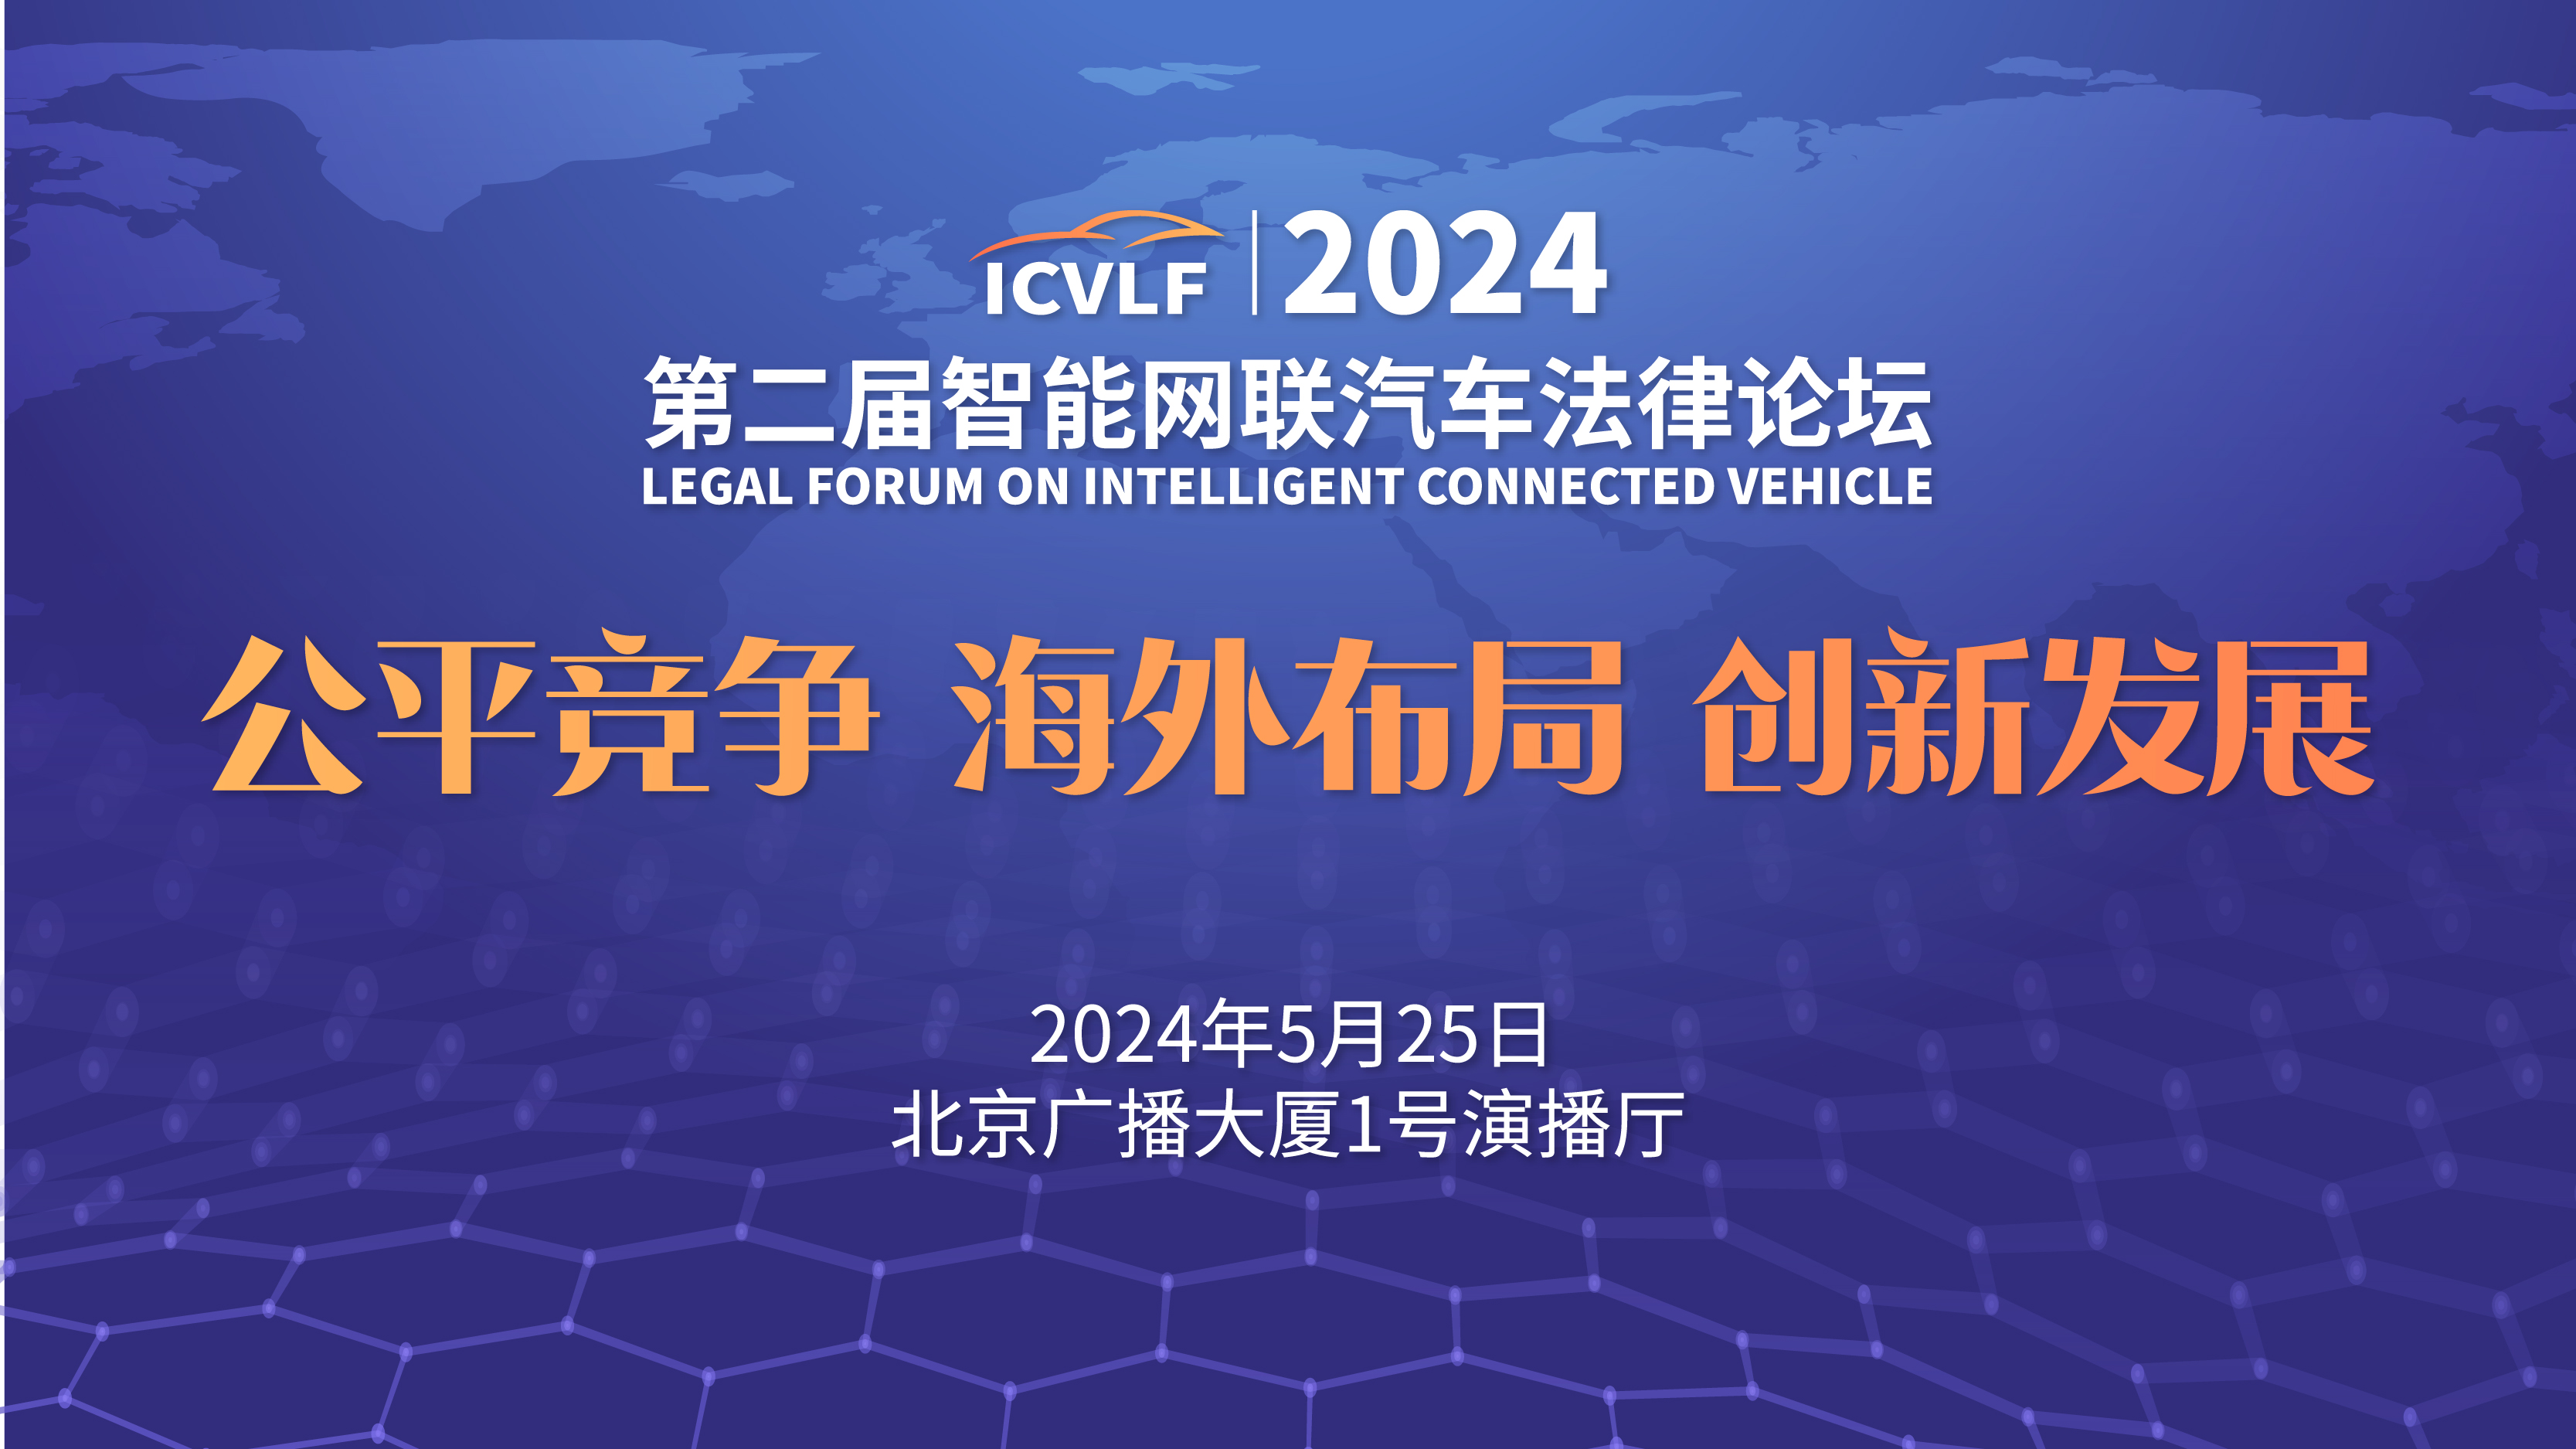 预报名 | “第二届智能网联汽车法律论坛”将于5月25日在北京举办